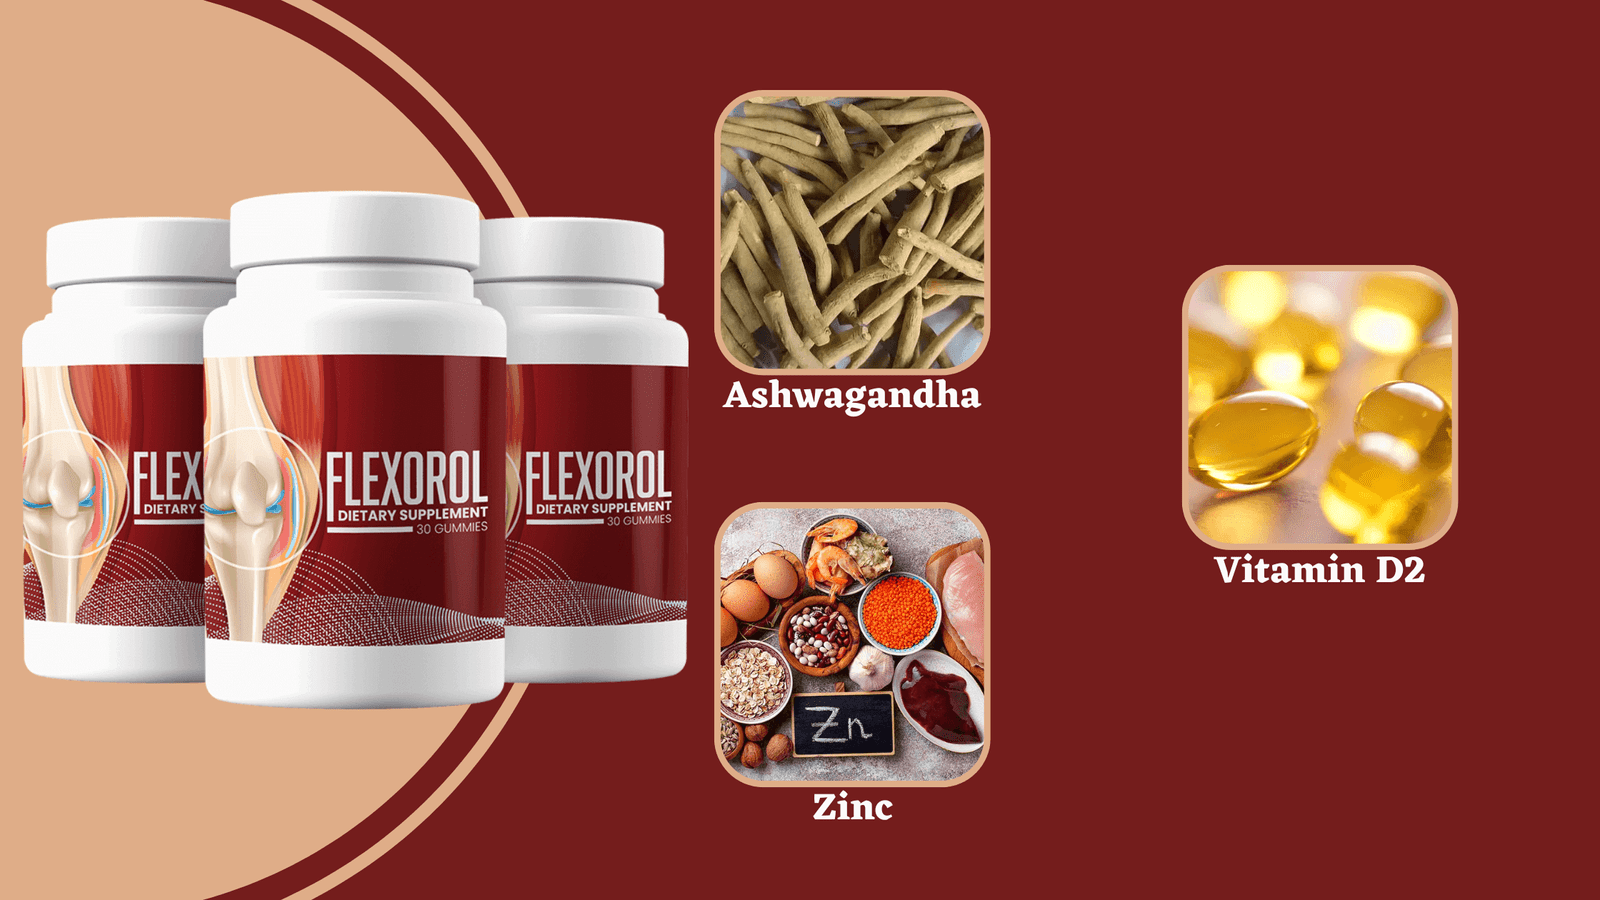 Flexorol Ingredients